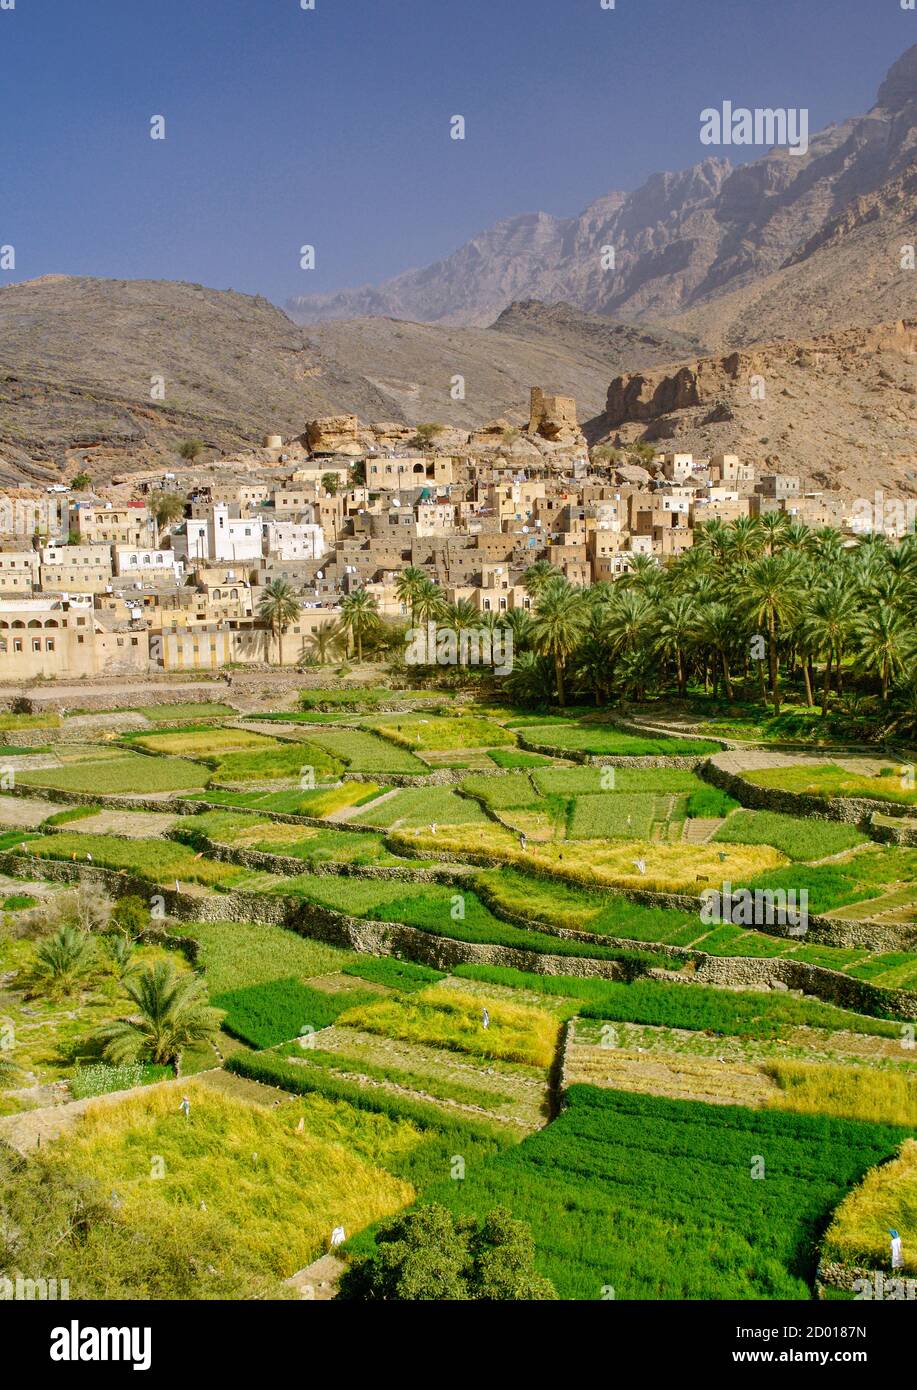 Le village de Bilad SEET et ses plantations à Wadi Bani Auf dans les montagnes Jebel Akhdar d'Oman. Banque D'Images